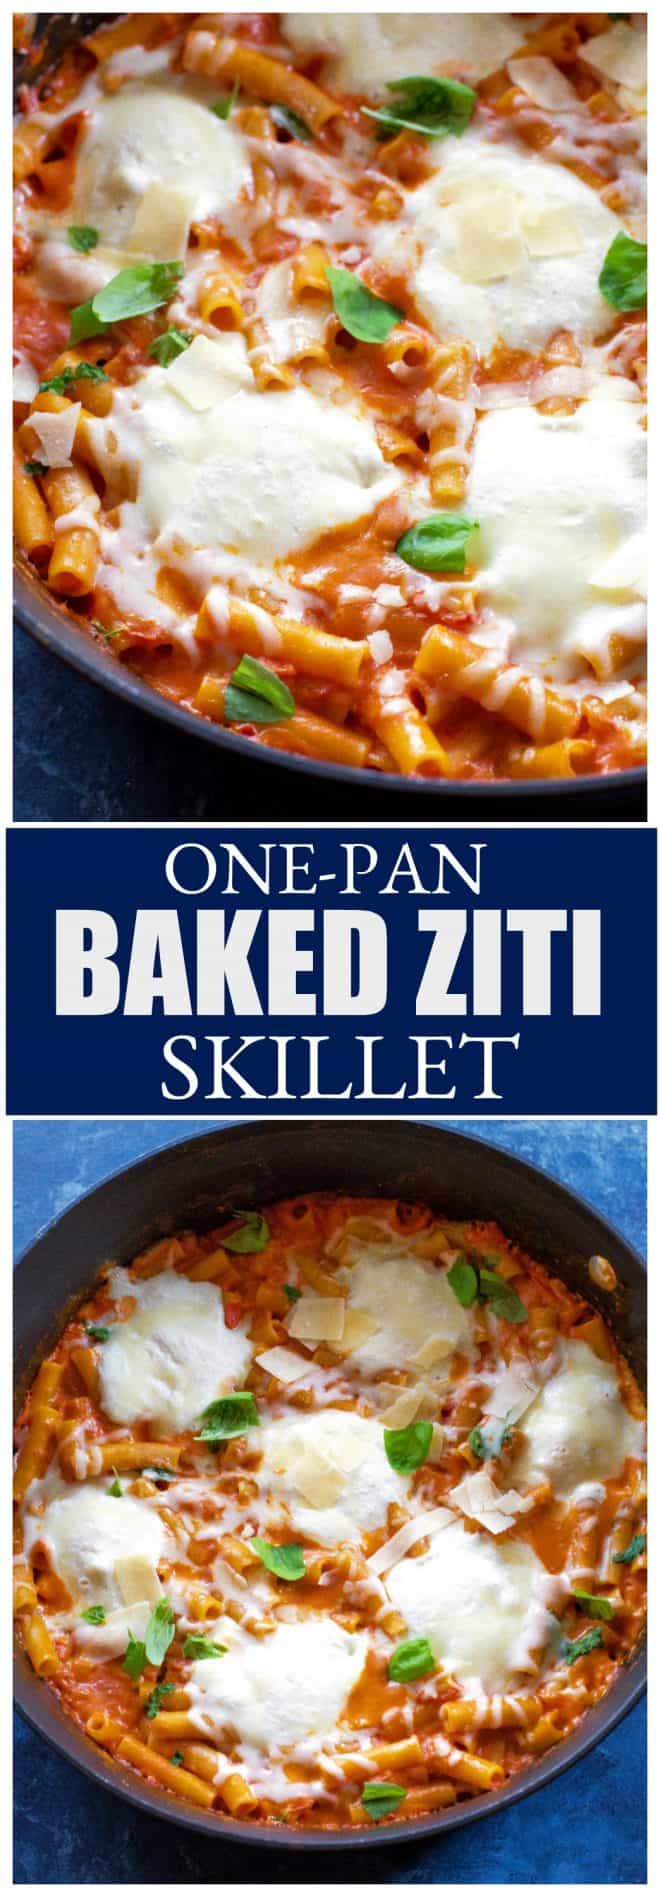 One-Pan Baked Ziti Skillet